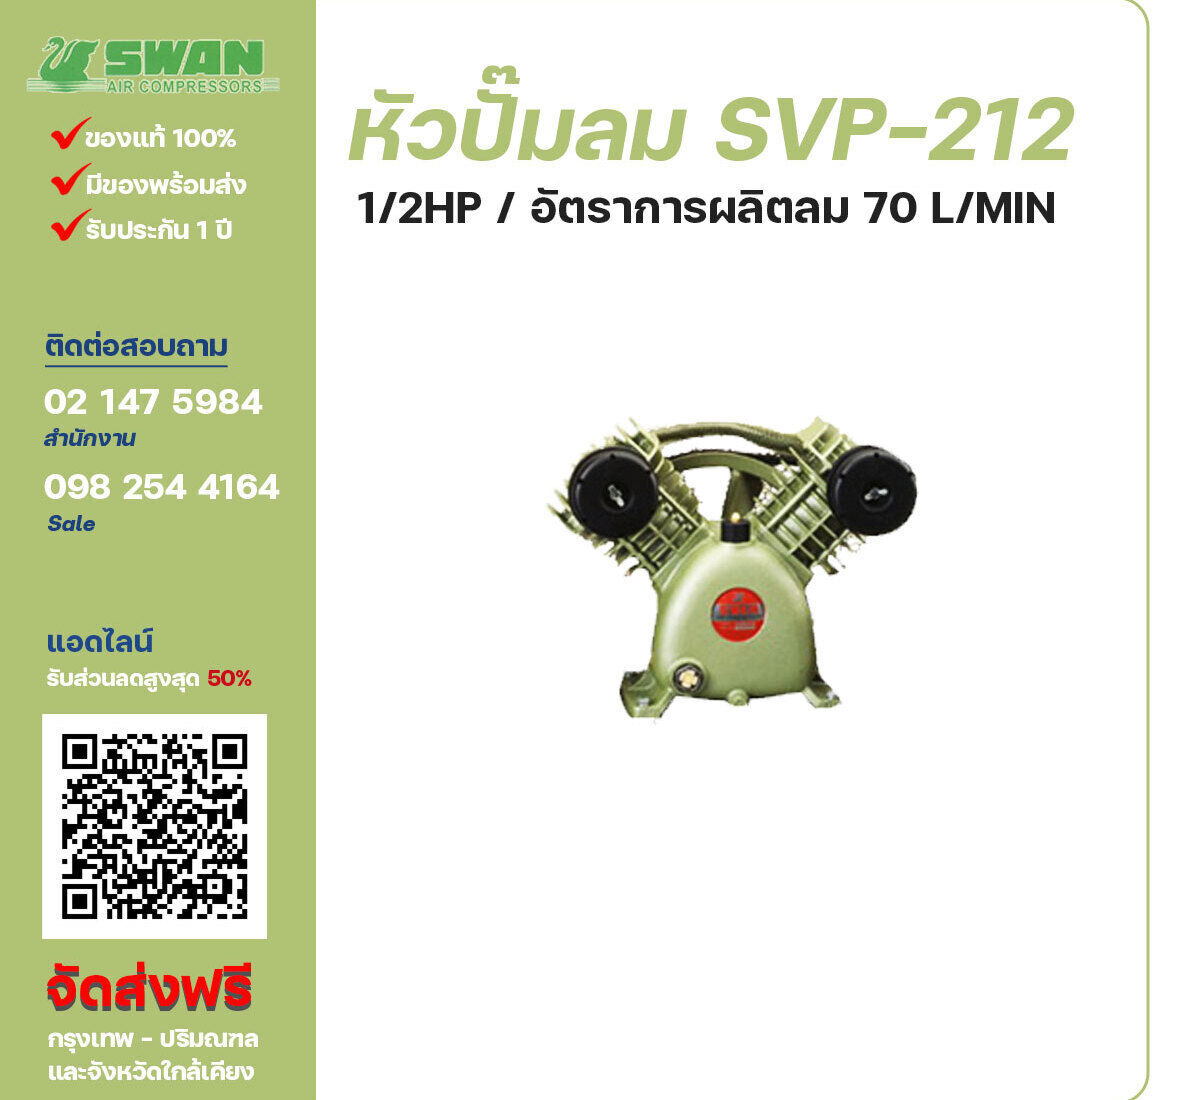 จำหน่ายหัวปั๊มลมสวอน ของแท้ 100% SWAN Bare Compressor รุ่น SVP-212 ขนาด 1/2 แรงม้า อัตราการผลิตลม 70 ลิตร / นาที รับประกัน 3 เดือน ตามเงื่อนไขของบริษัทฯ จัดส่งฟรี กรุงเทพ-ปริมณฑล